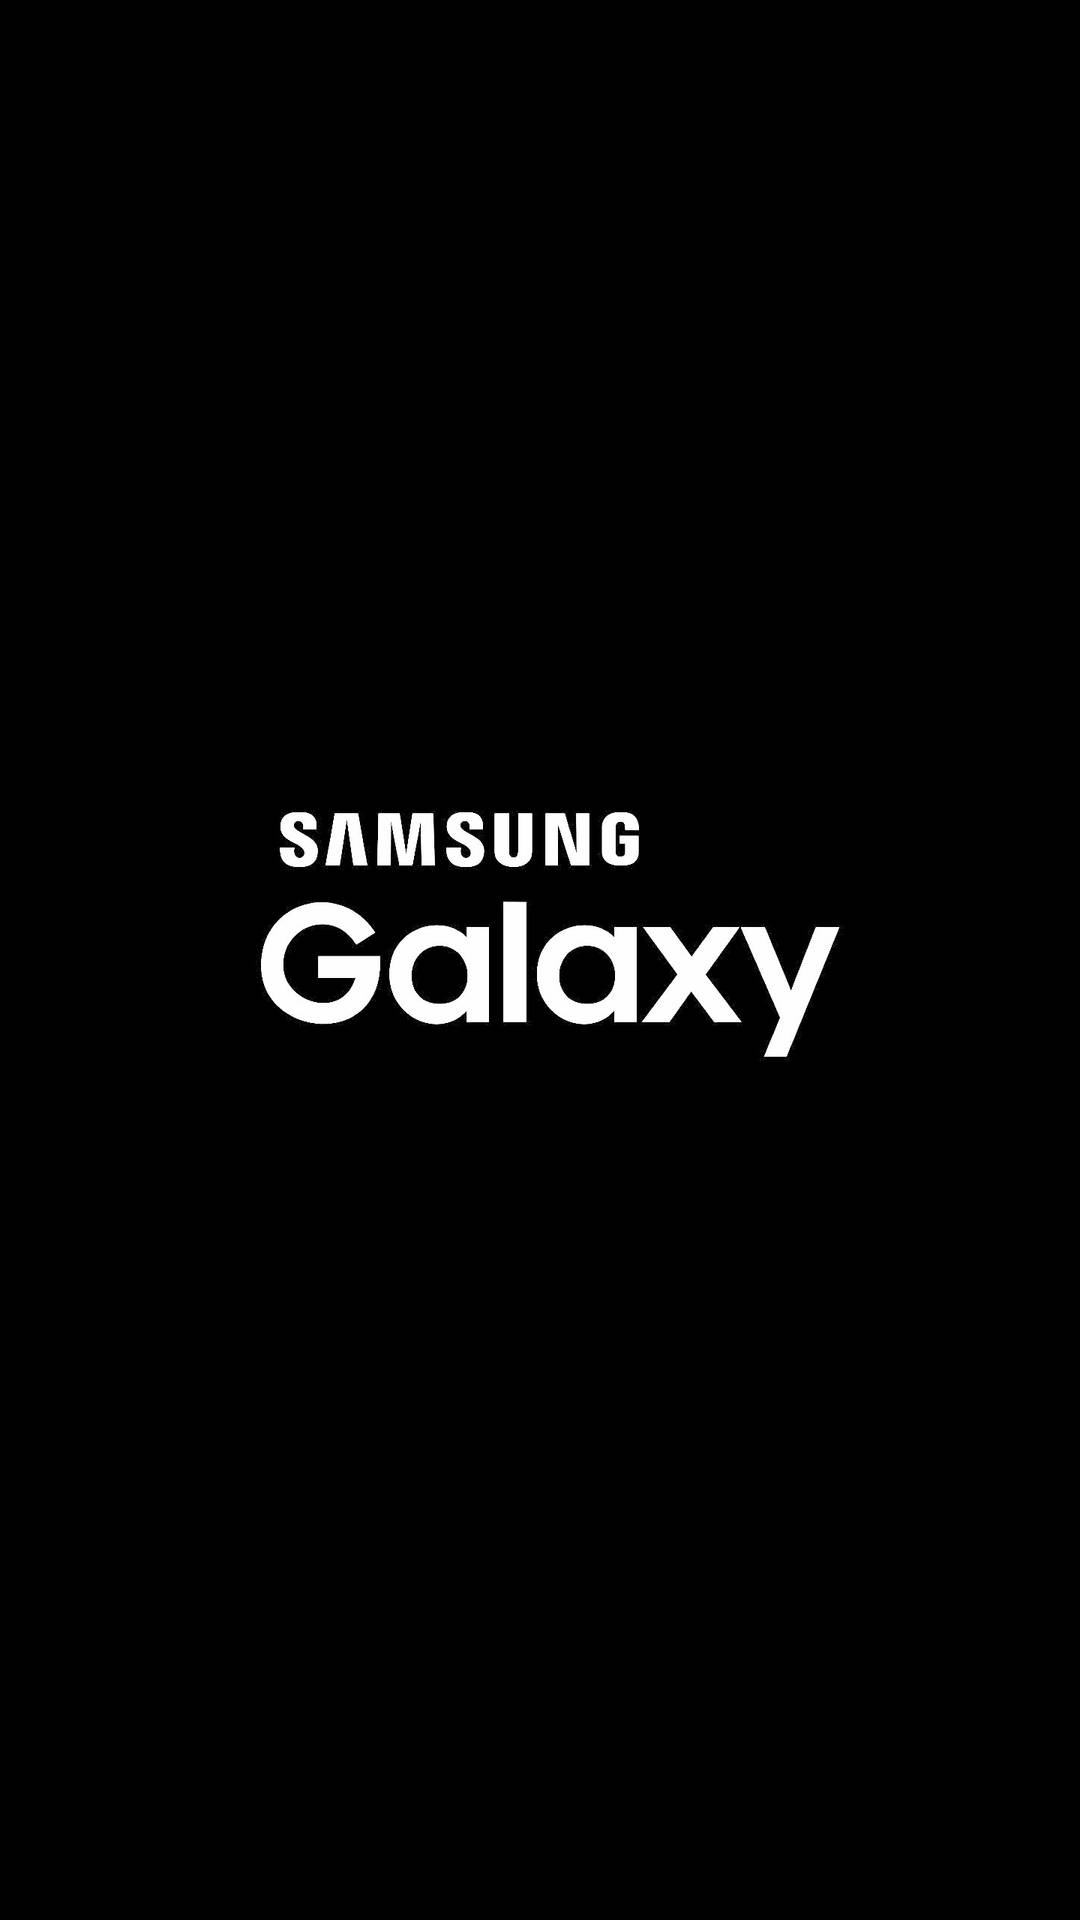 Samsung Galaxy Sort/hvid Logo Wallpaper